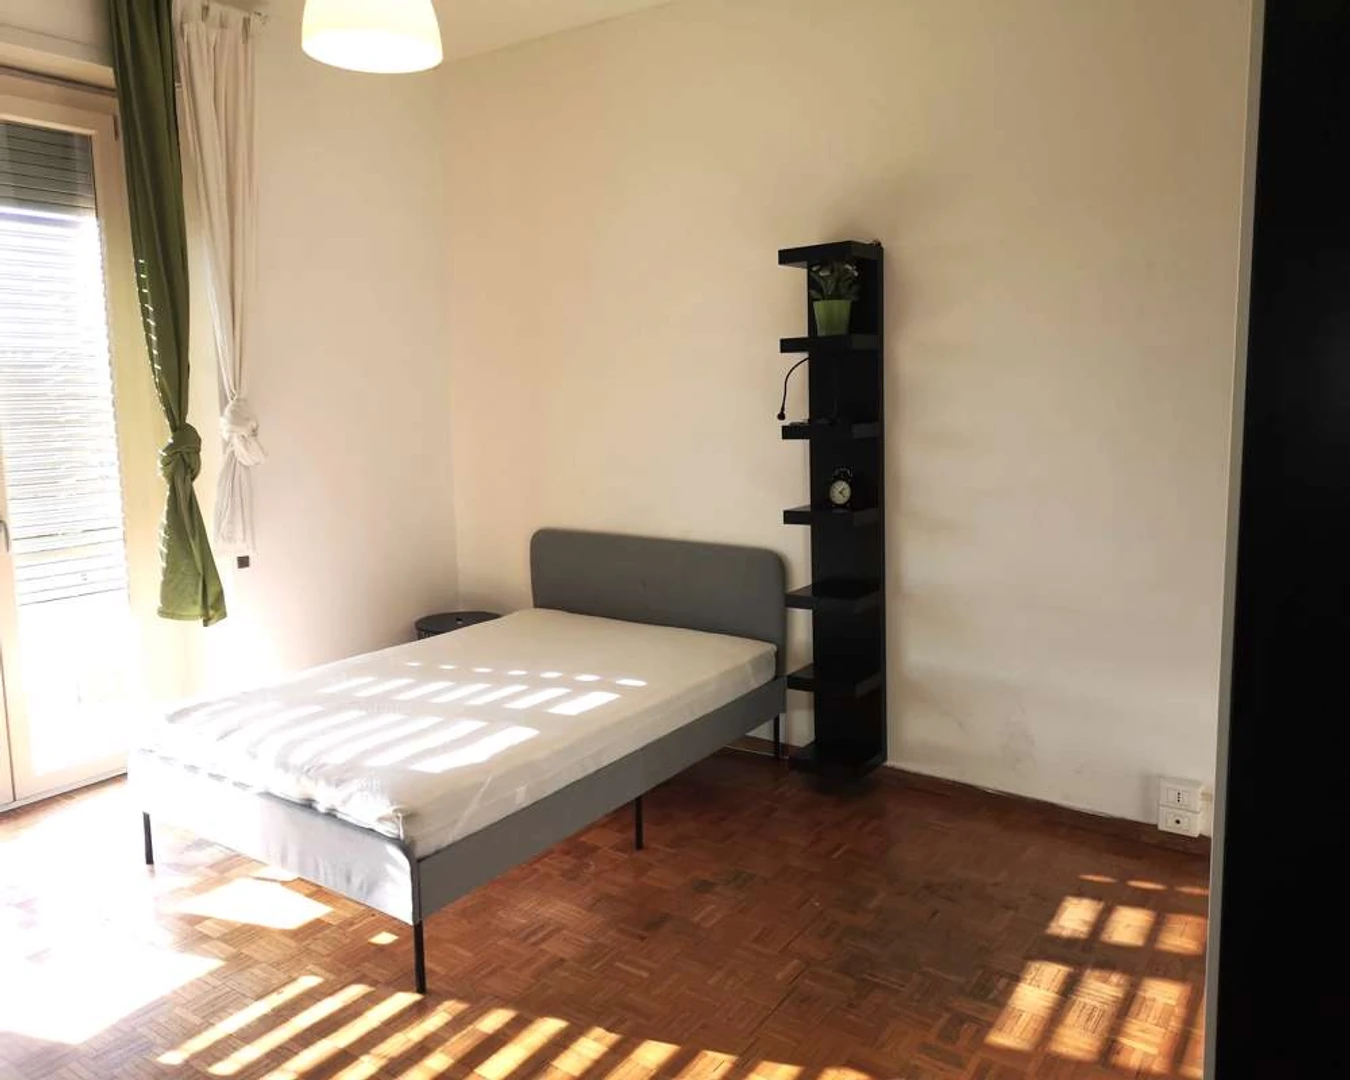 Habitación en alquiler con cama doble Bolonia